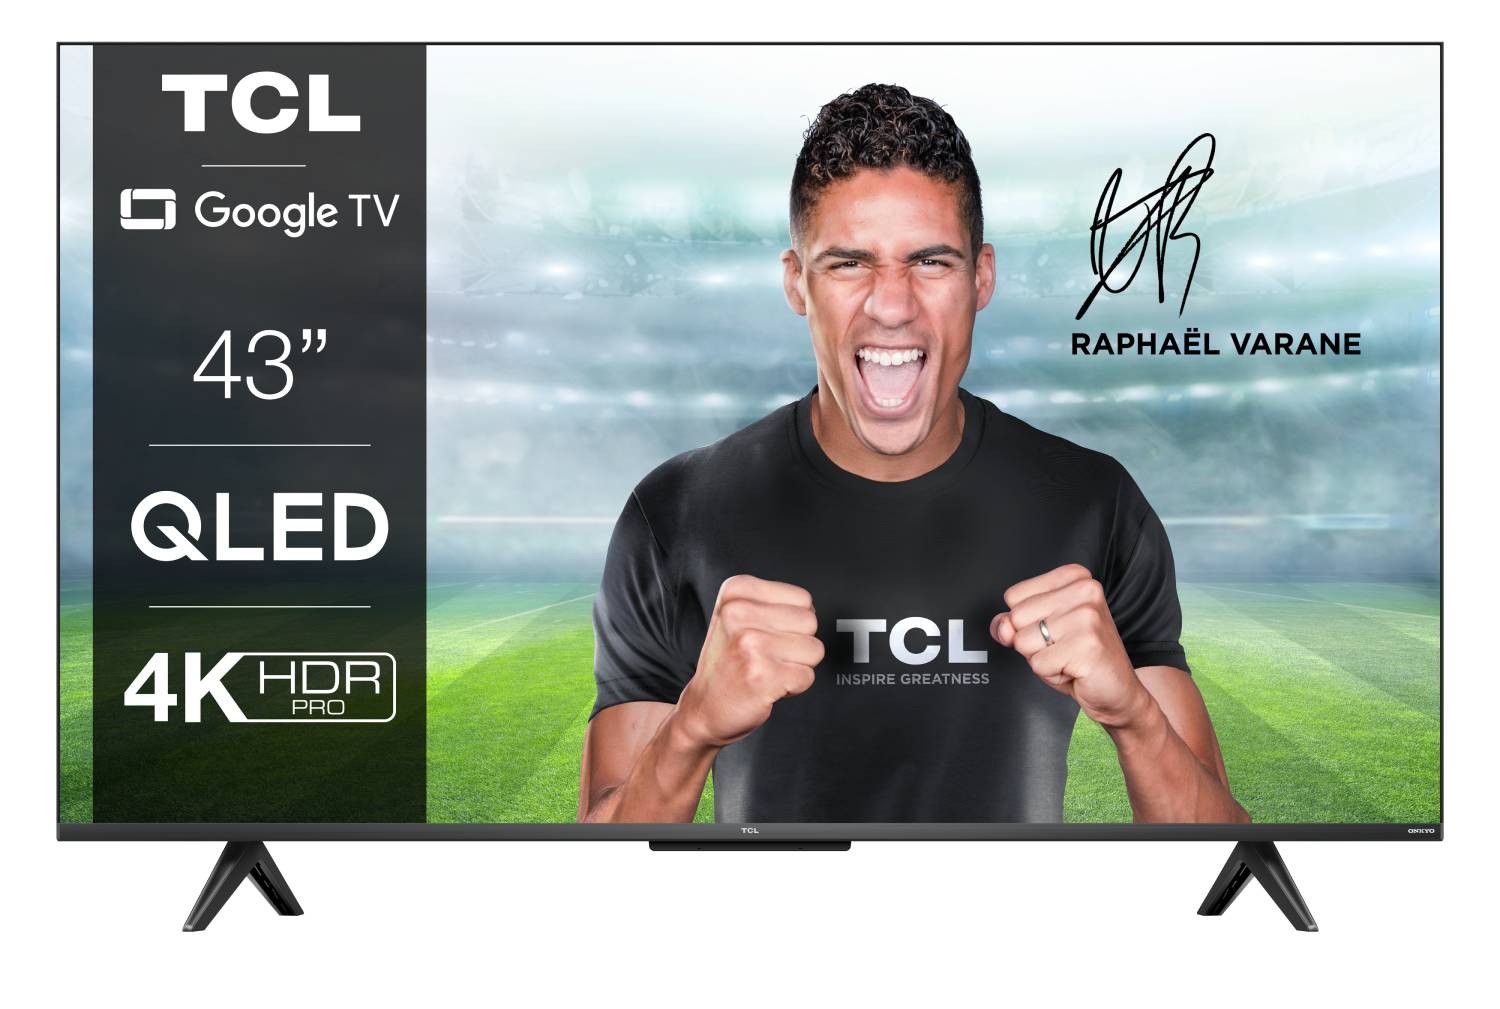 TCL TV QLED 4K 108 cm TV QLED 43QLED760 4K 108 cm